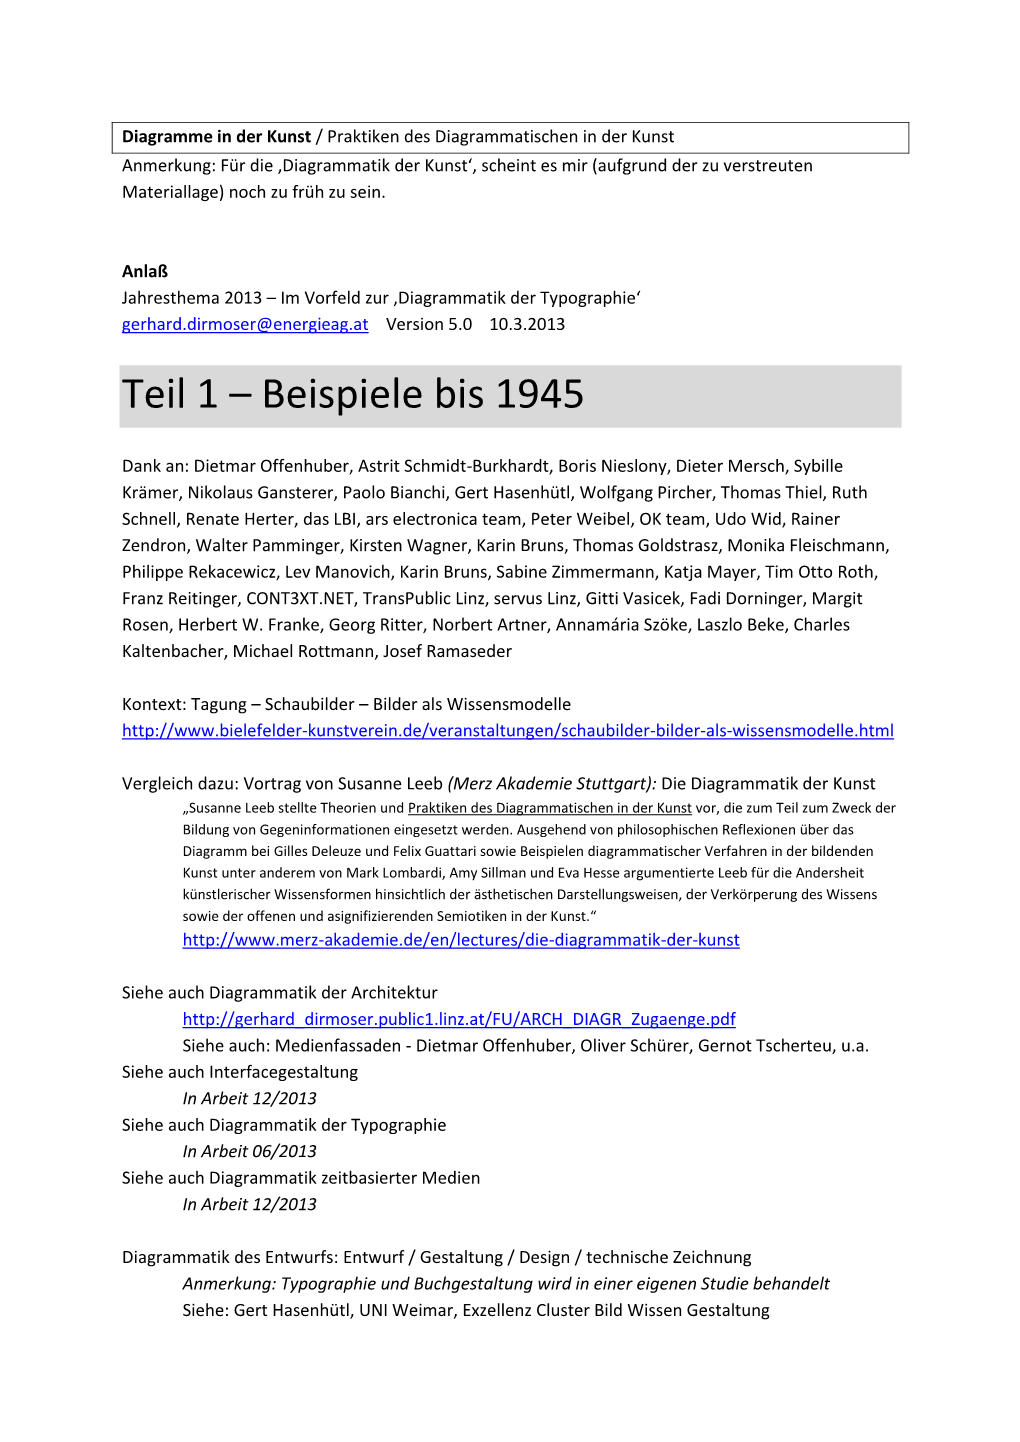 Teil 1 – Beispiele Bis 1945